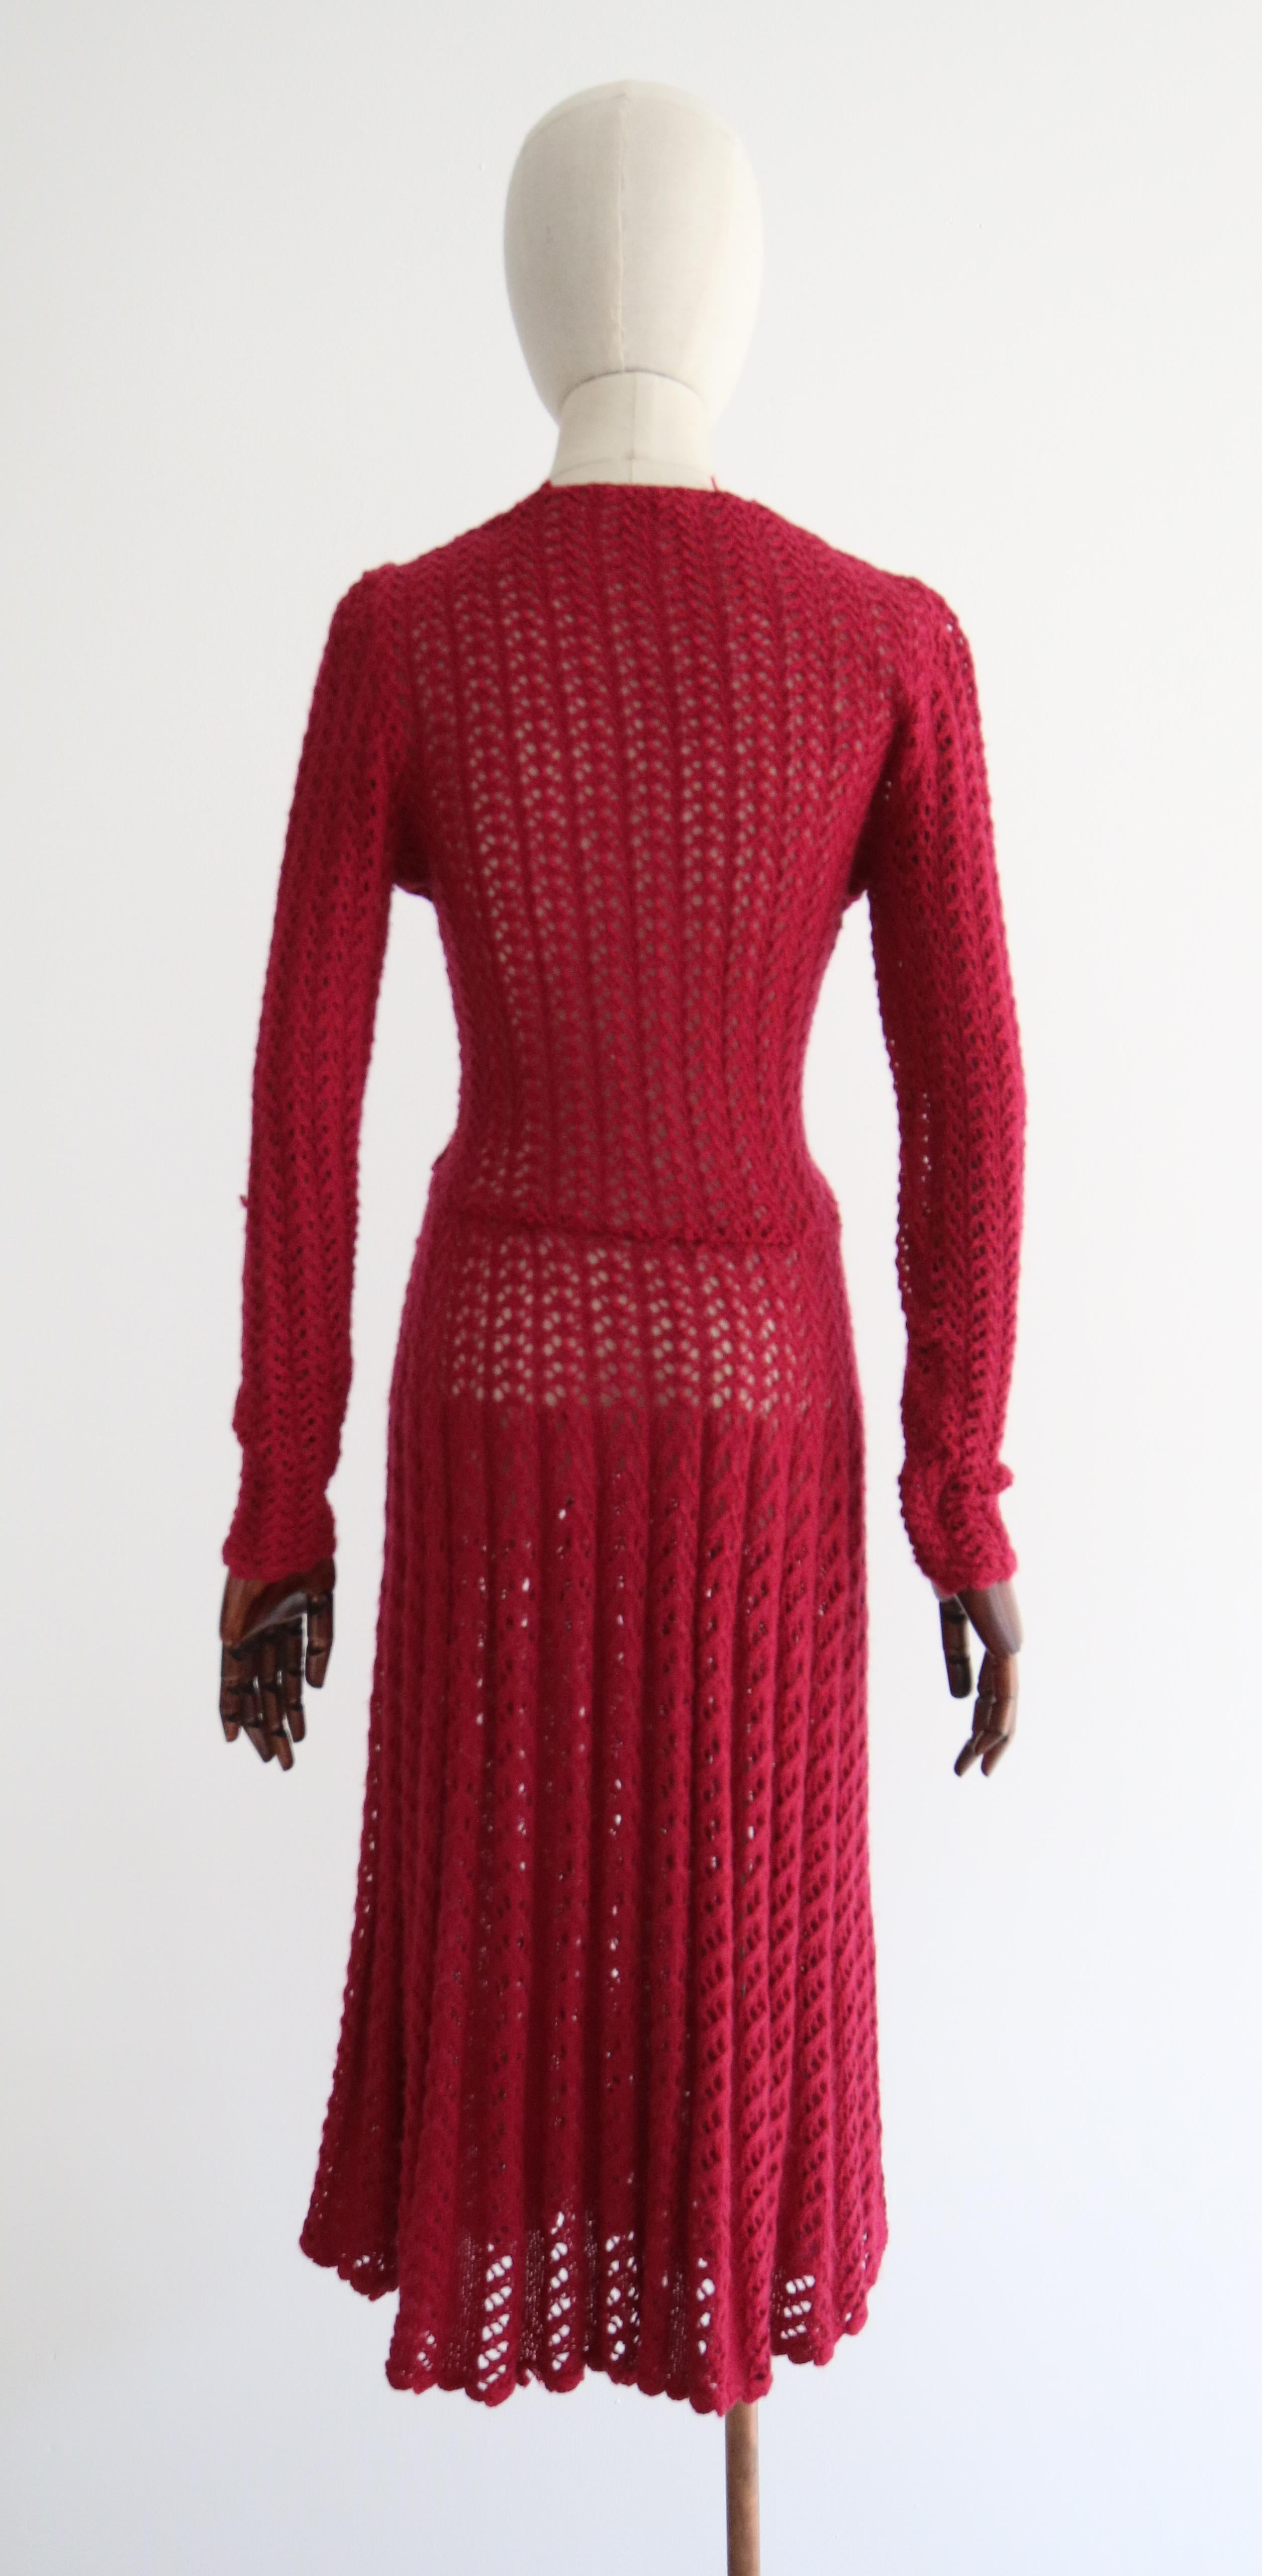 Vintage 1940's Magenta Knitted Dress UK 10-12 US 6-8 For Sale 3